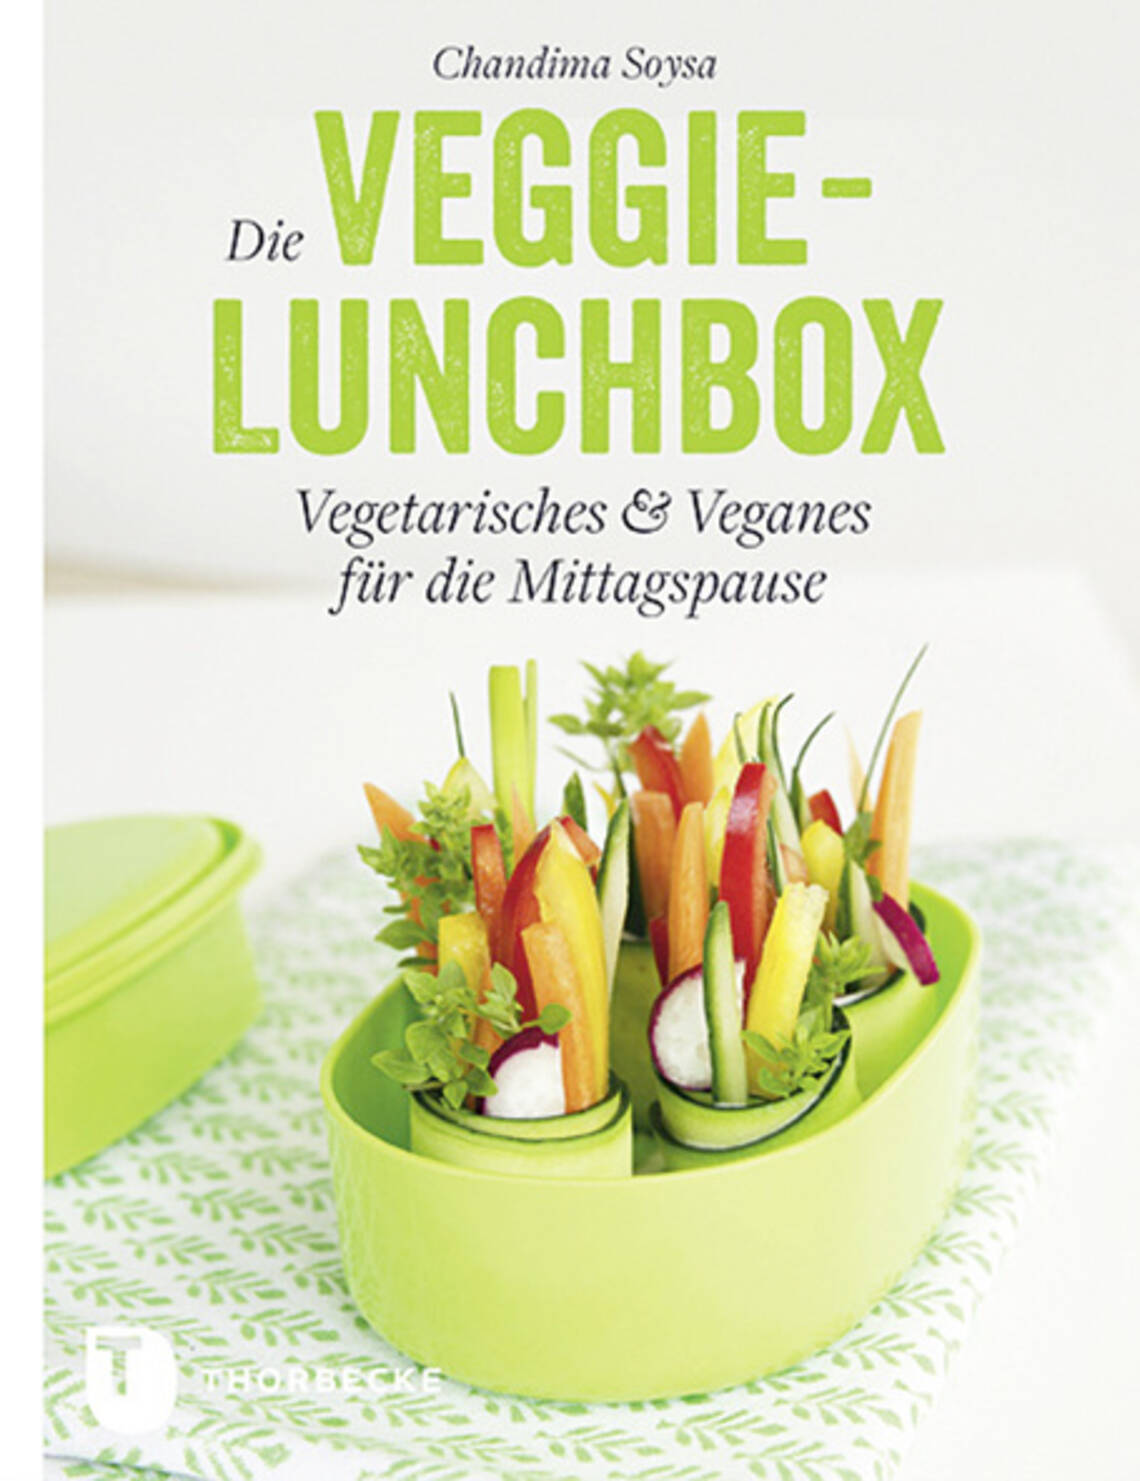 Die Veggie-Lunchbox von Chandima Soysa